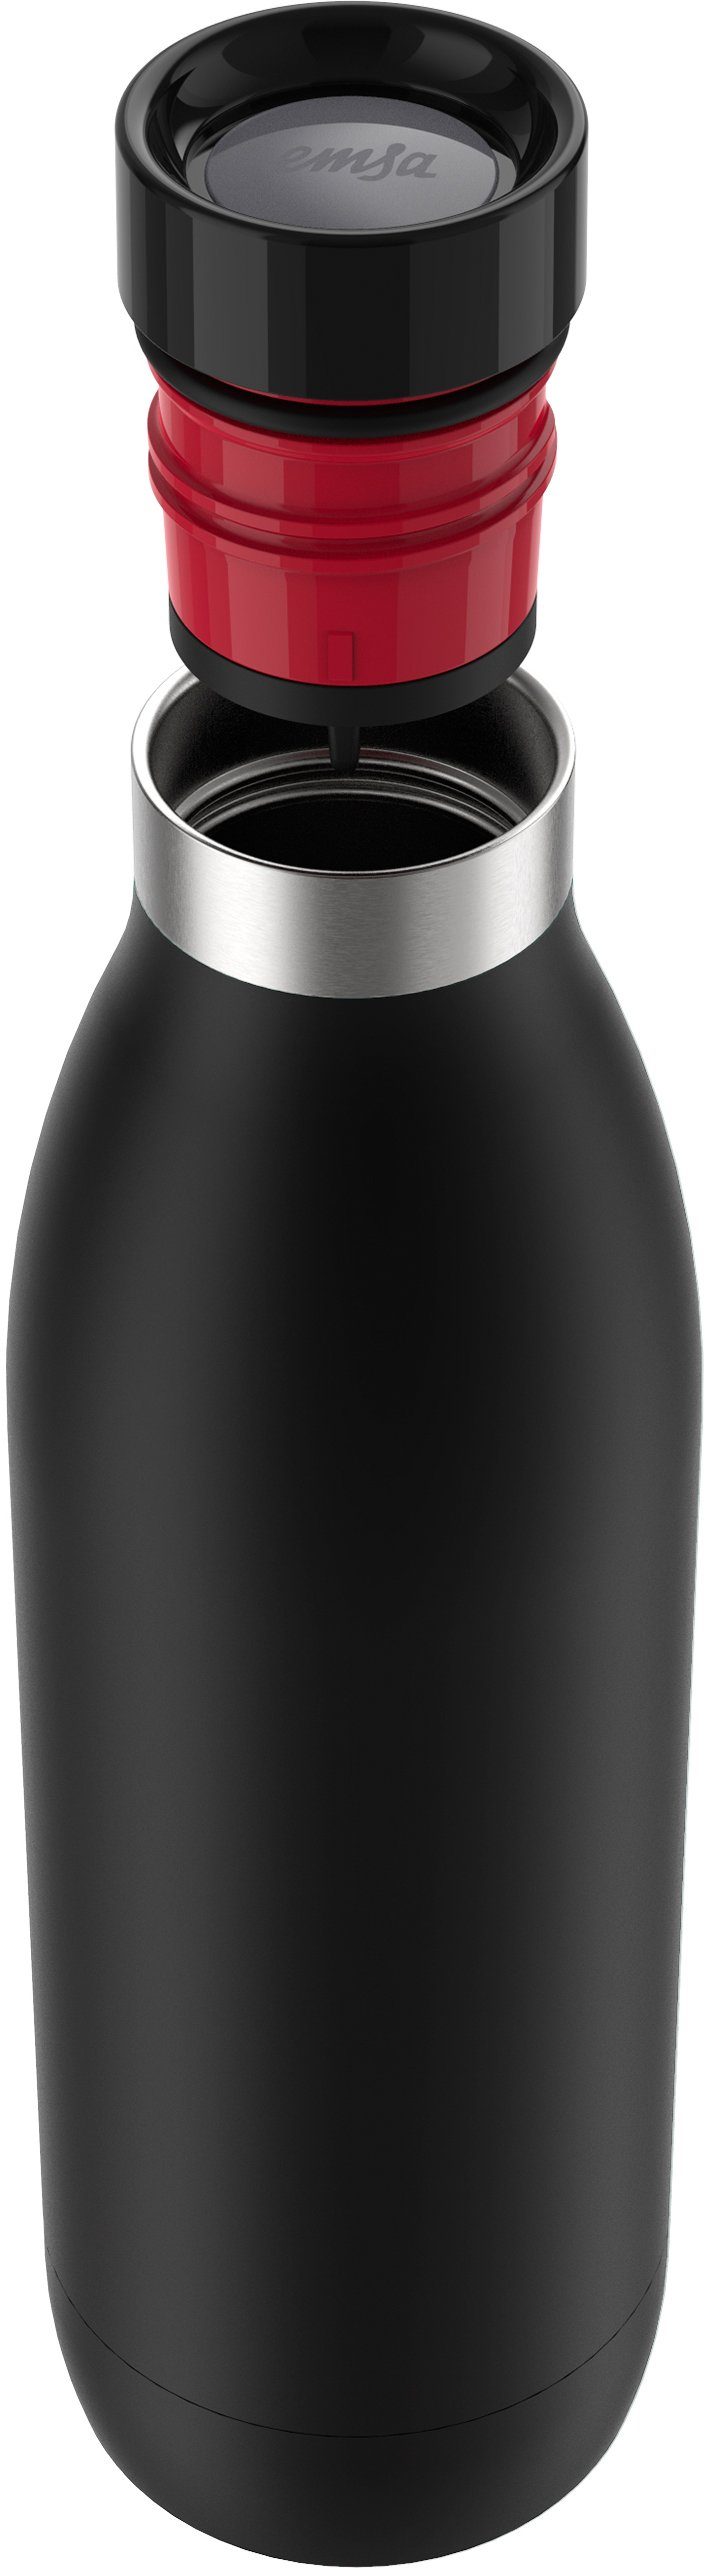 Emsa Trinkflasche Bludrop Color, Edelstahl, 12h warm/24h Quick-Press schwarz Deckel, kühl, spülmaschinenfest